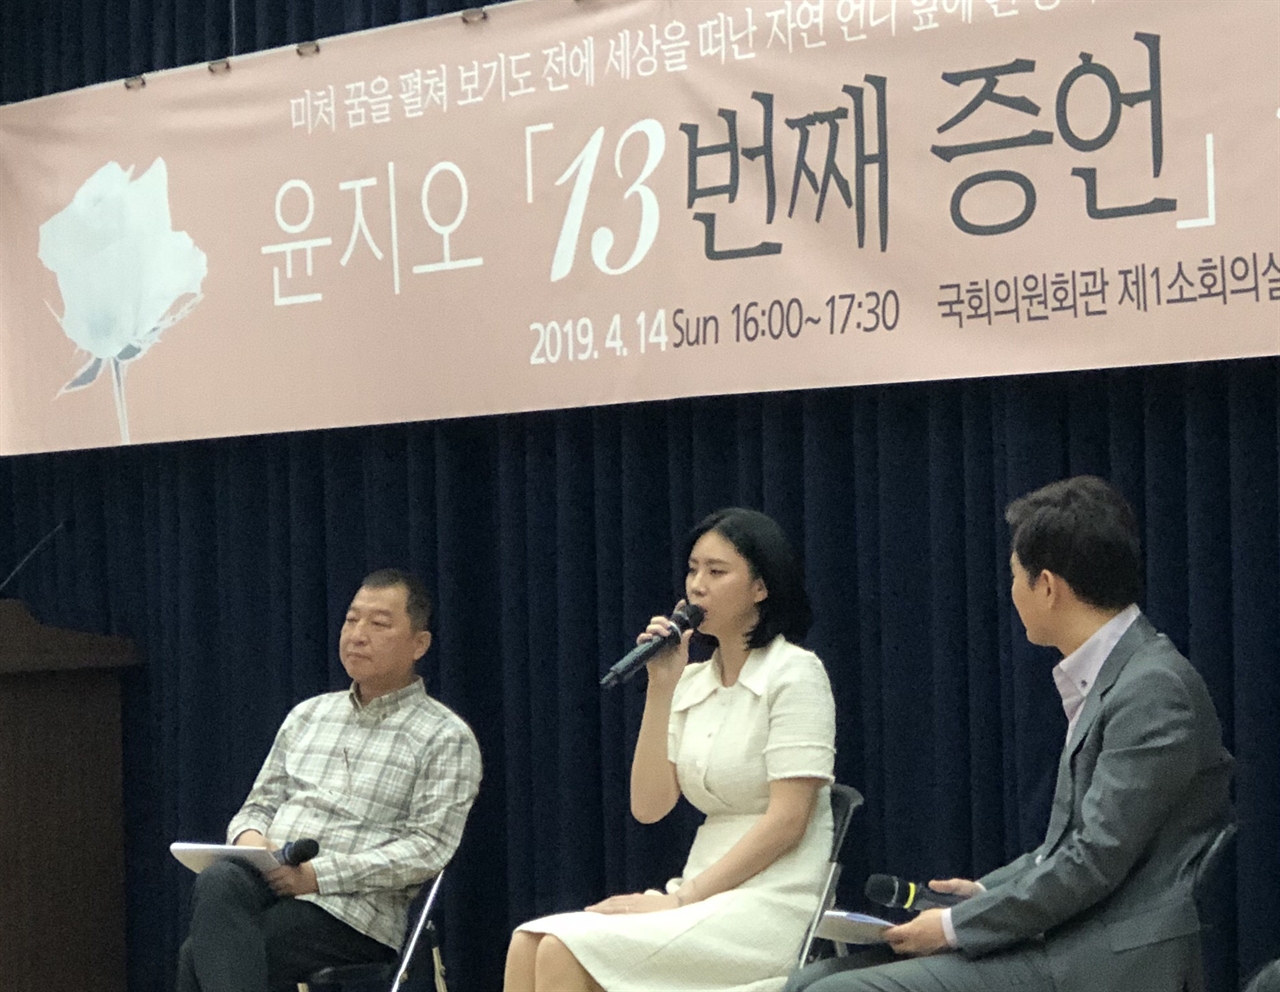 14일 윤지오씨 <13번째 증언> 북 콘서트가 국회의원회관에서 열렸다. 윤씨 왼쪽은 박창일 신부.